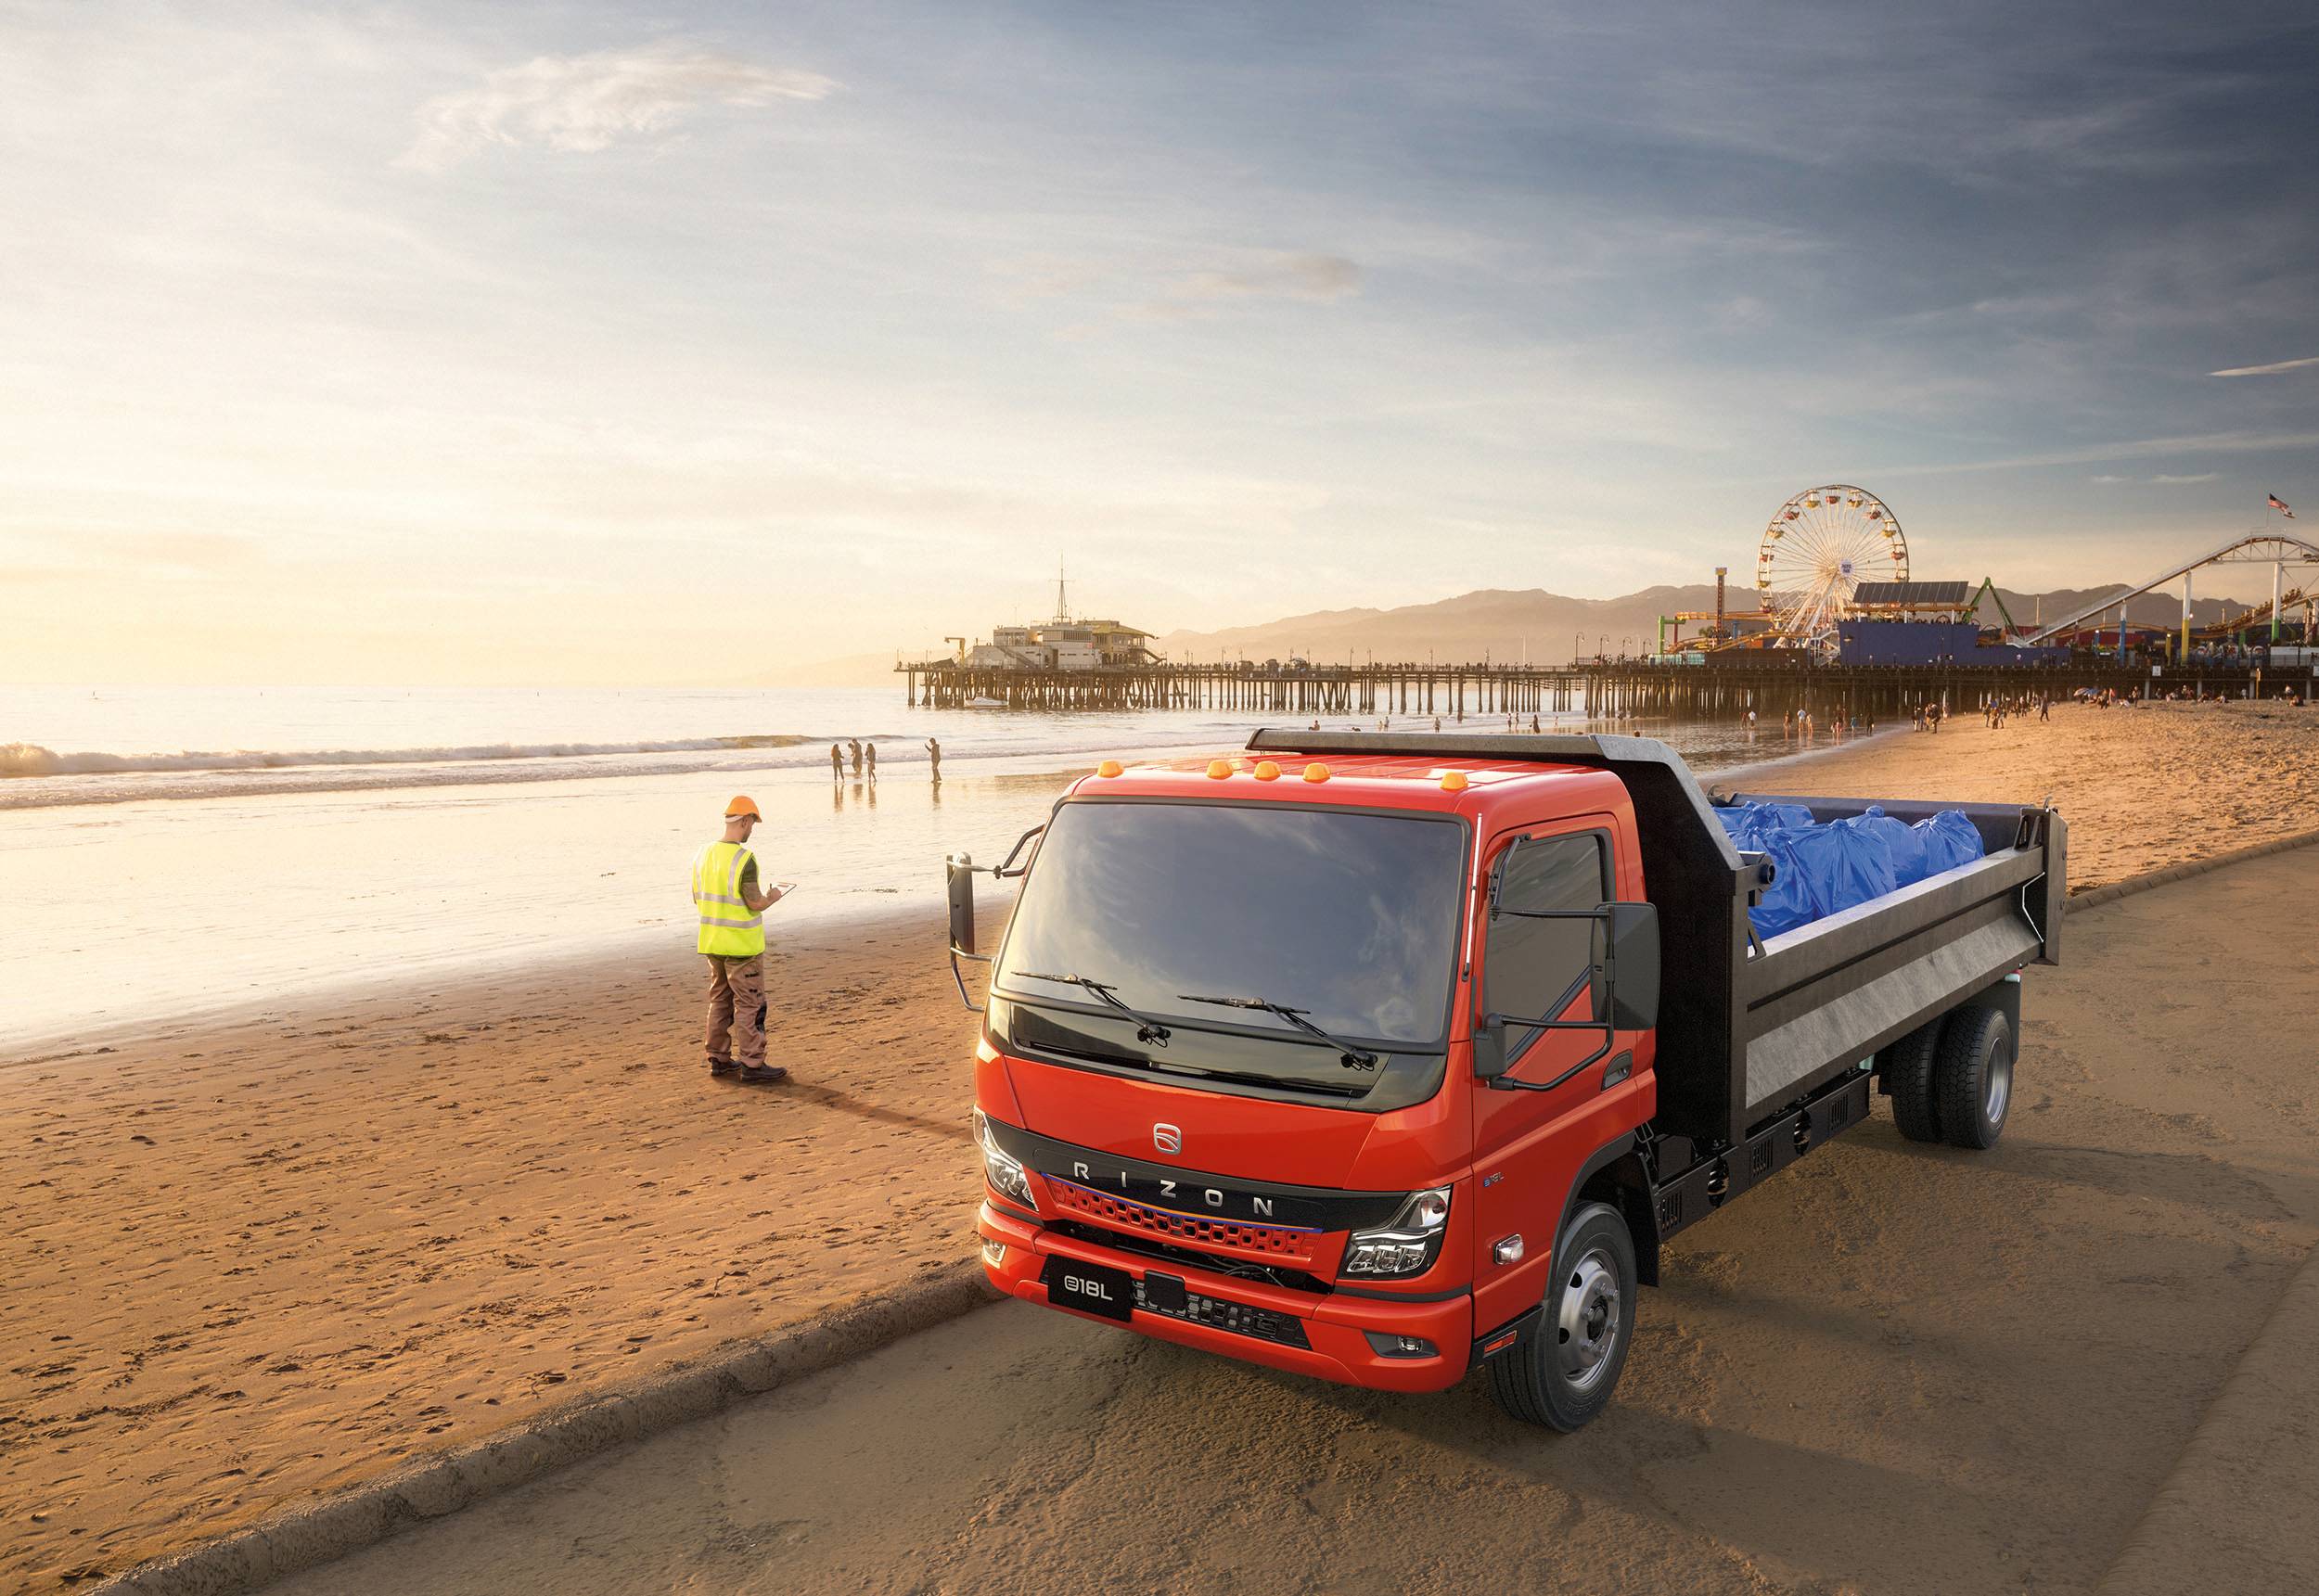 Daimler-truck-rizon-brand-launch-3-1